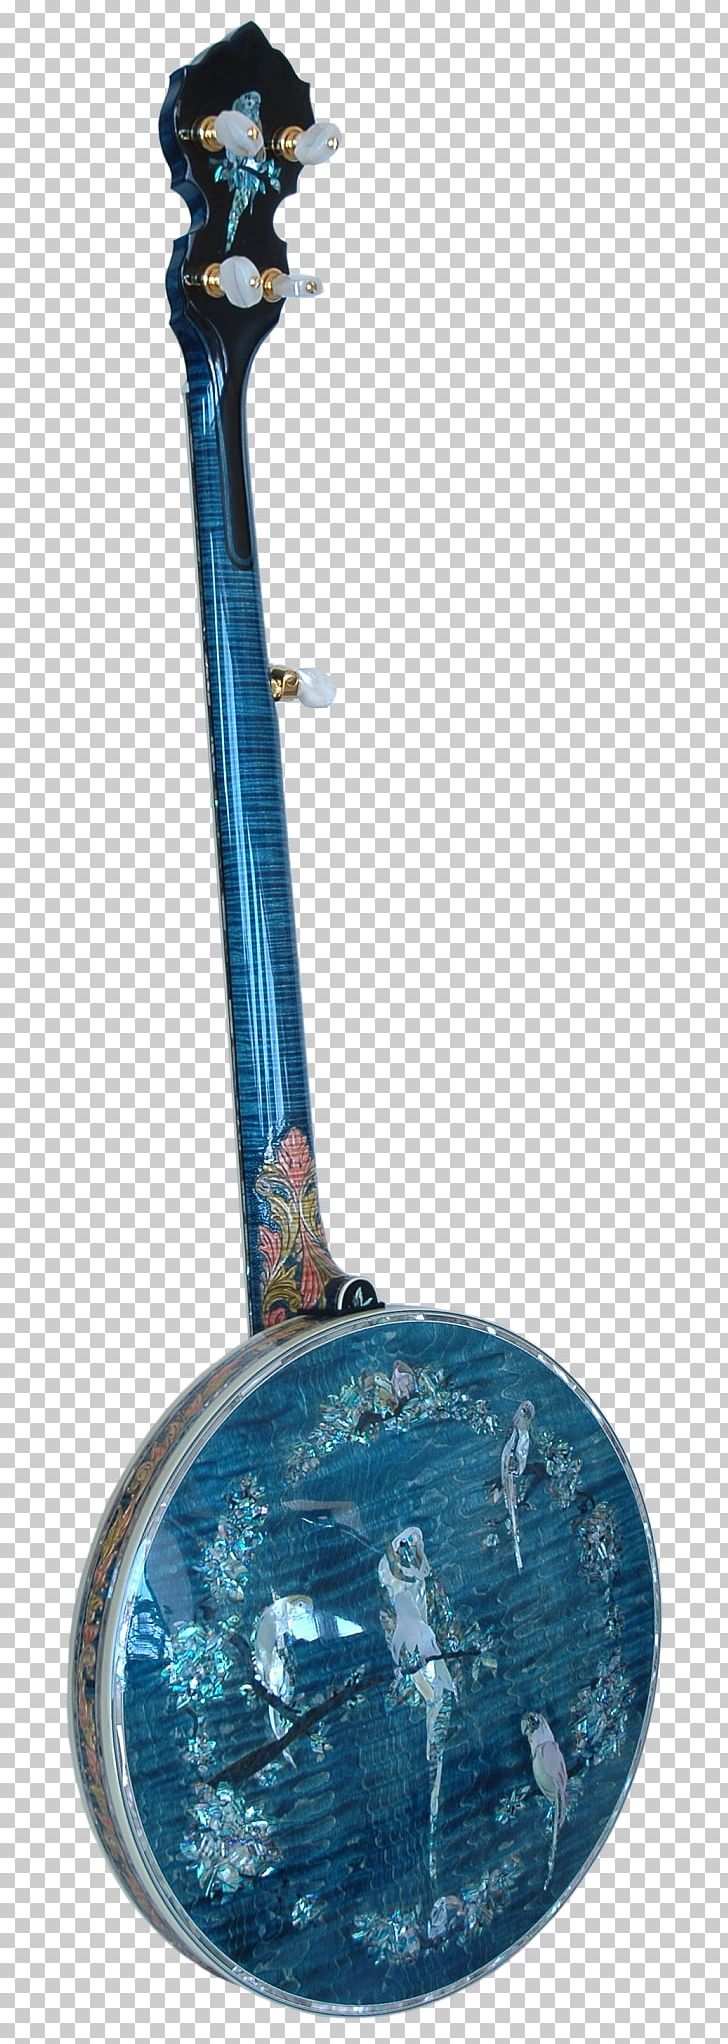 Musical Instruments Ukulele Banjo String Instruments Art PNG, Clipart, Acoustic Guitar, Art, Artist, Banjo, Banjo Uke Free PNG Download